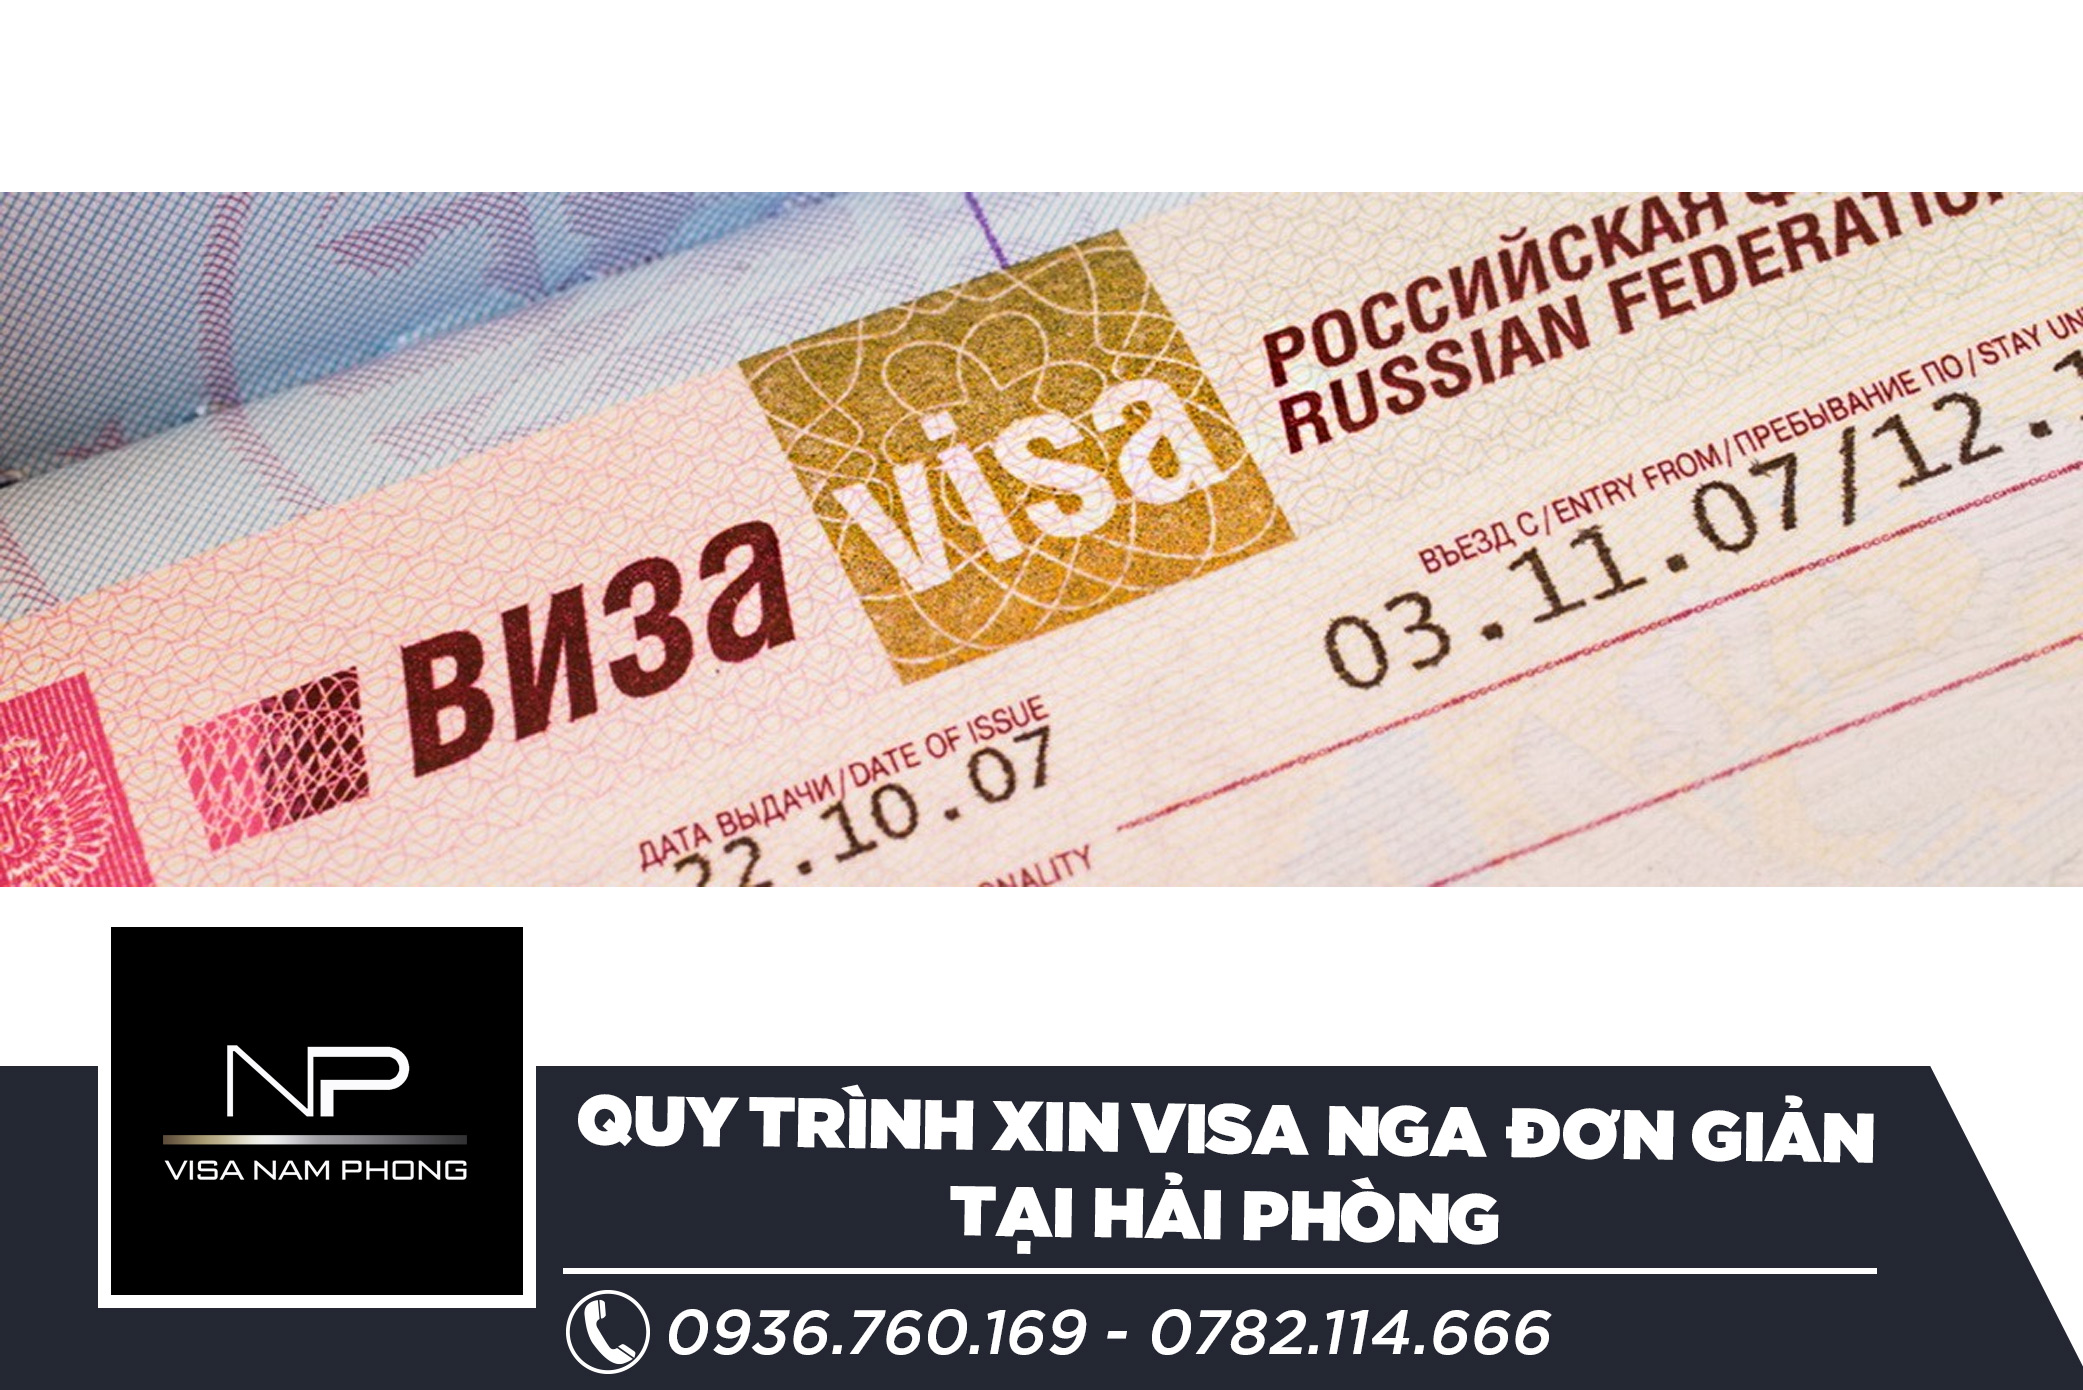 Quy trình làm visa đơn giản tại Hải Phòng